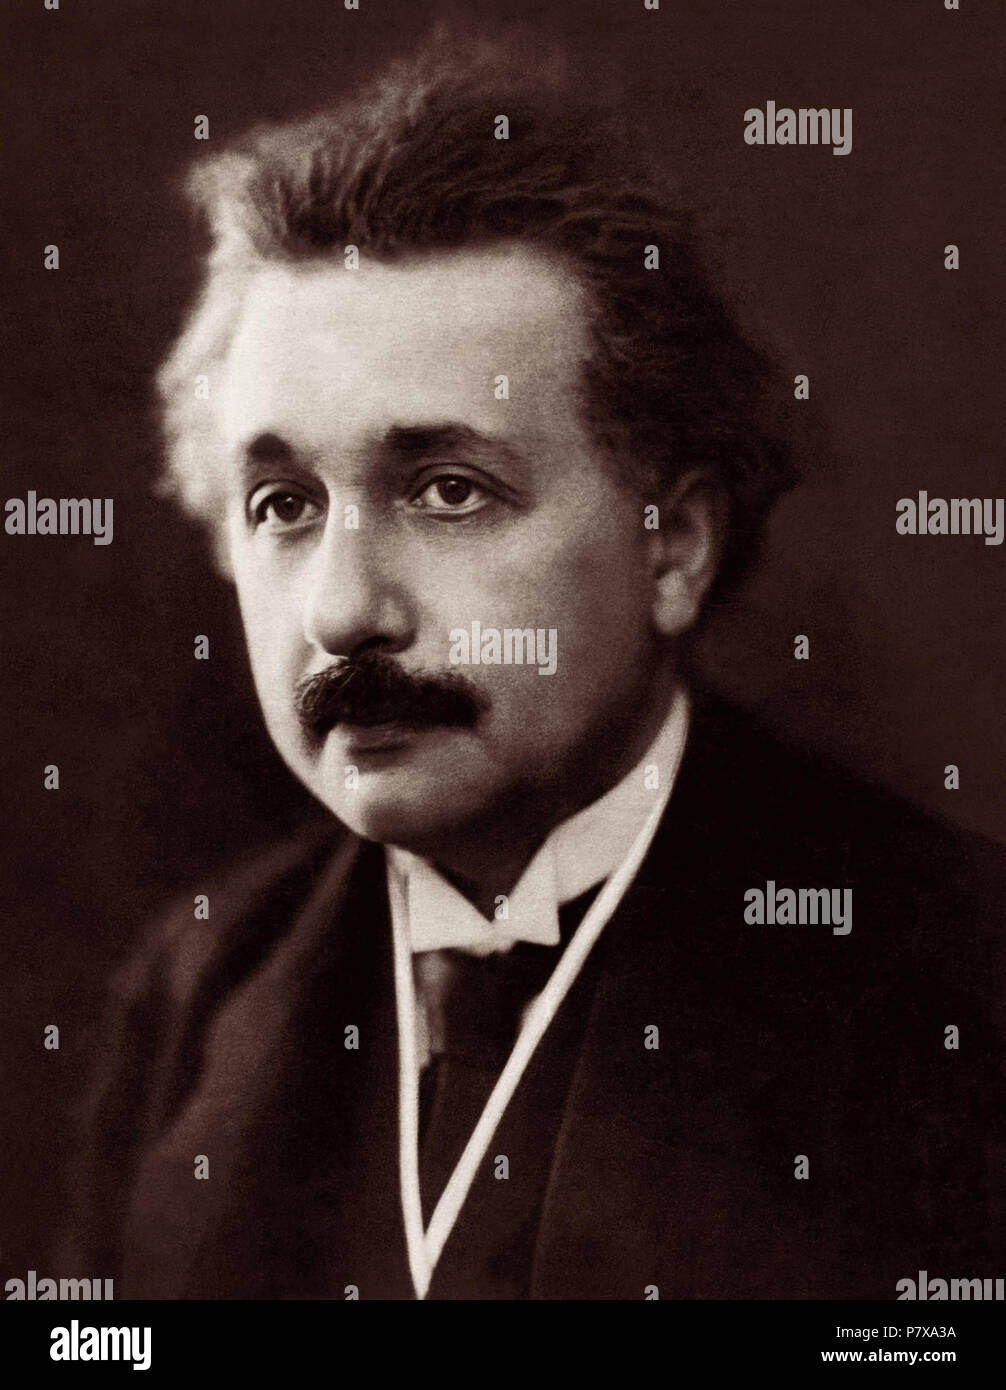 Albert Einstein Portrait von Henri Manuel (wahrscheinlich ab 30. März 1922 in Paris, Frankreich). Einstein erhielt den Nobelpreis für Physik im Jahr 1921. Stockfoto